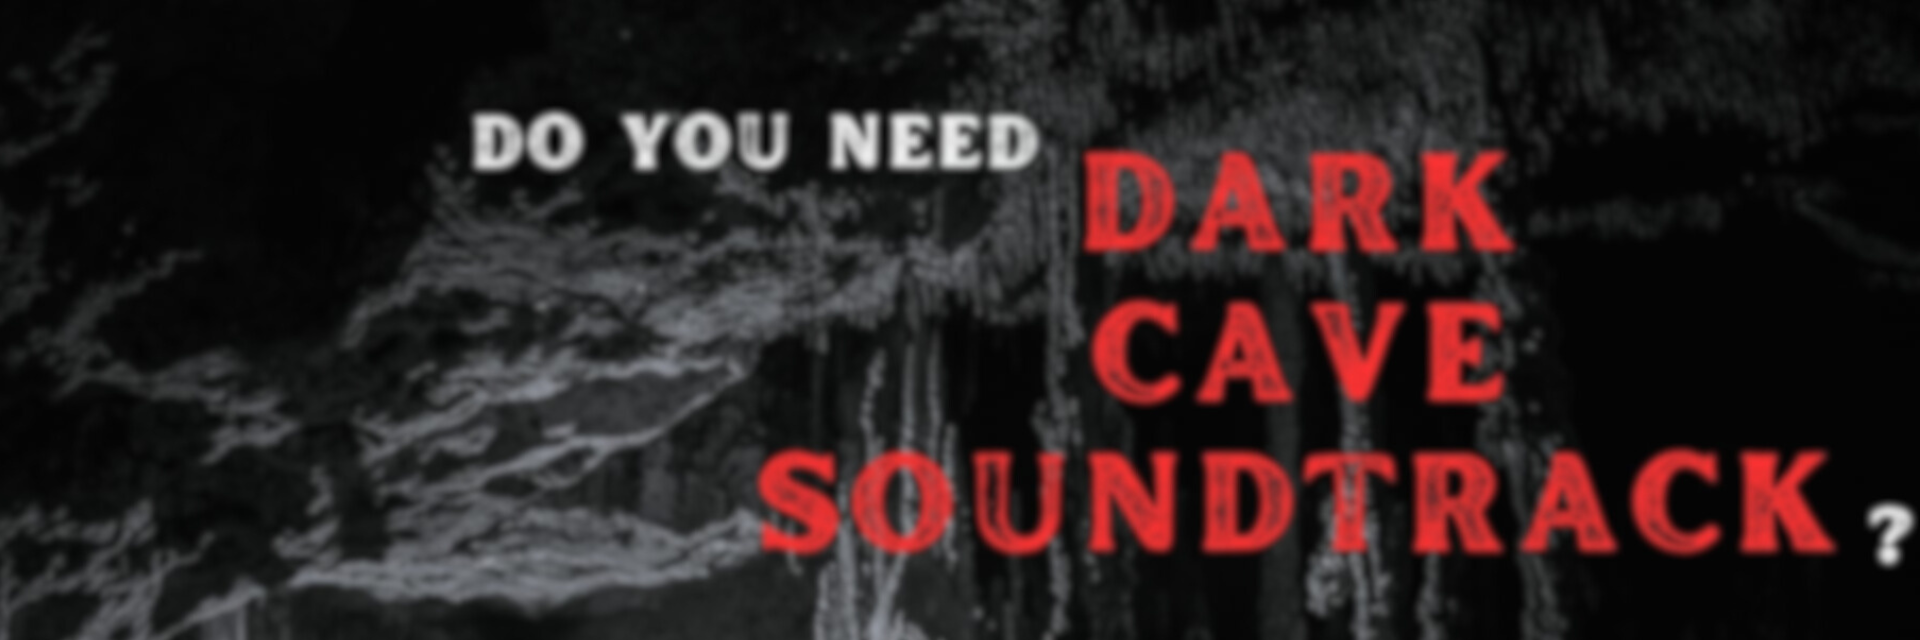 Dark Cave Soundtrack | Mountains: sub terra, per aquas